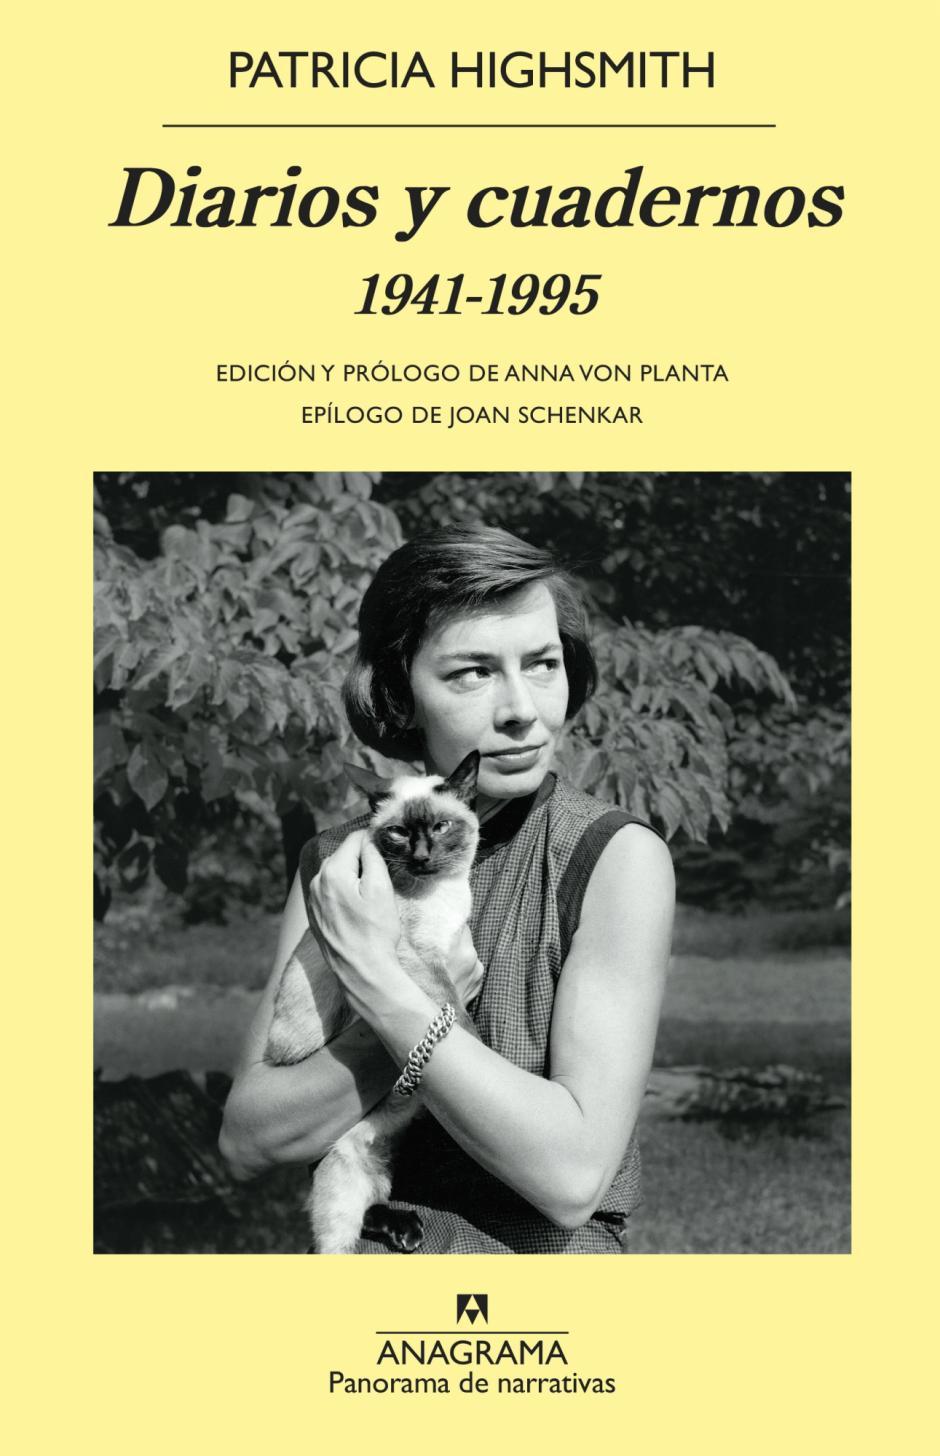 'Diarios y cuadernos' (editorial Anagrama), de Patricia Highsmith